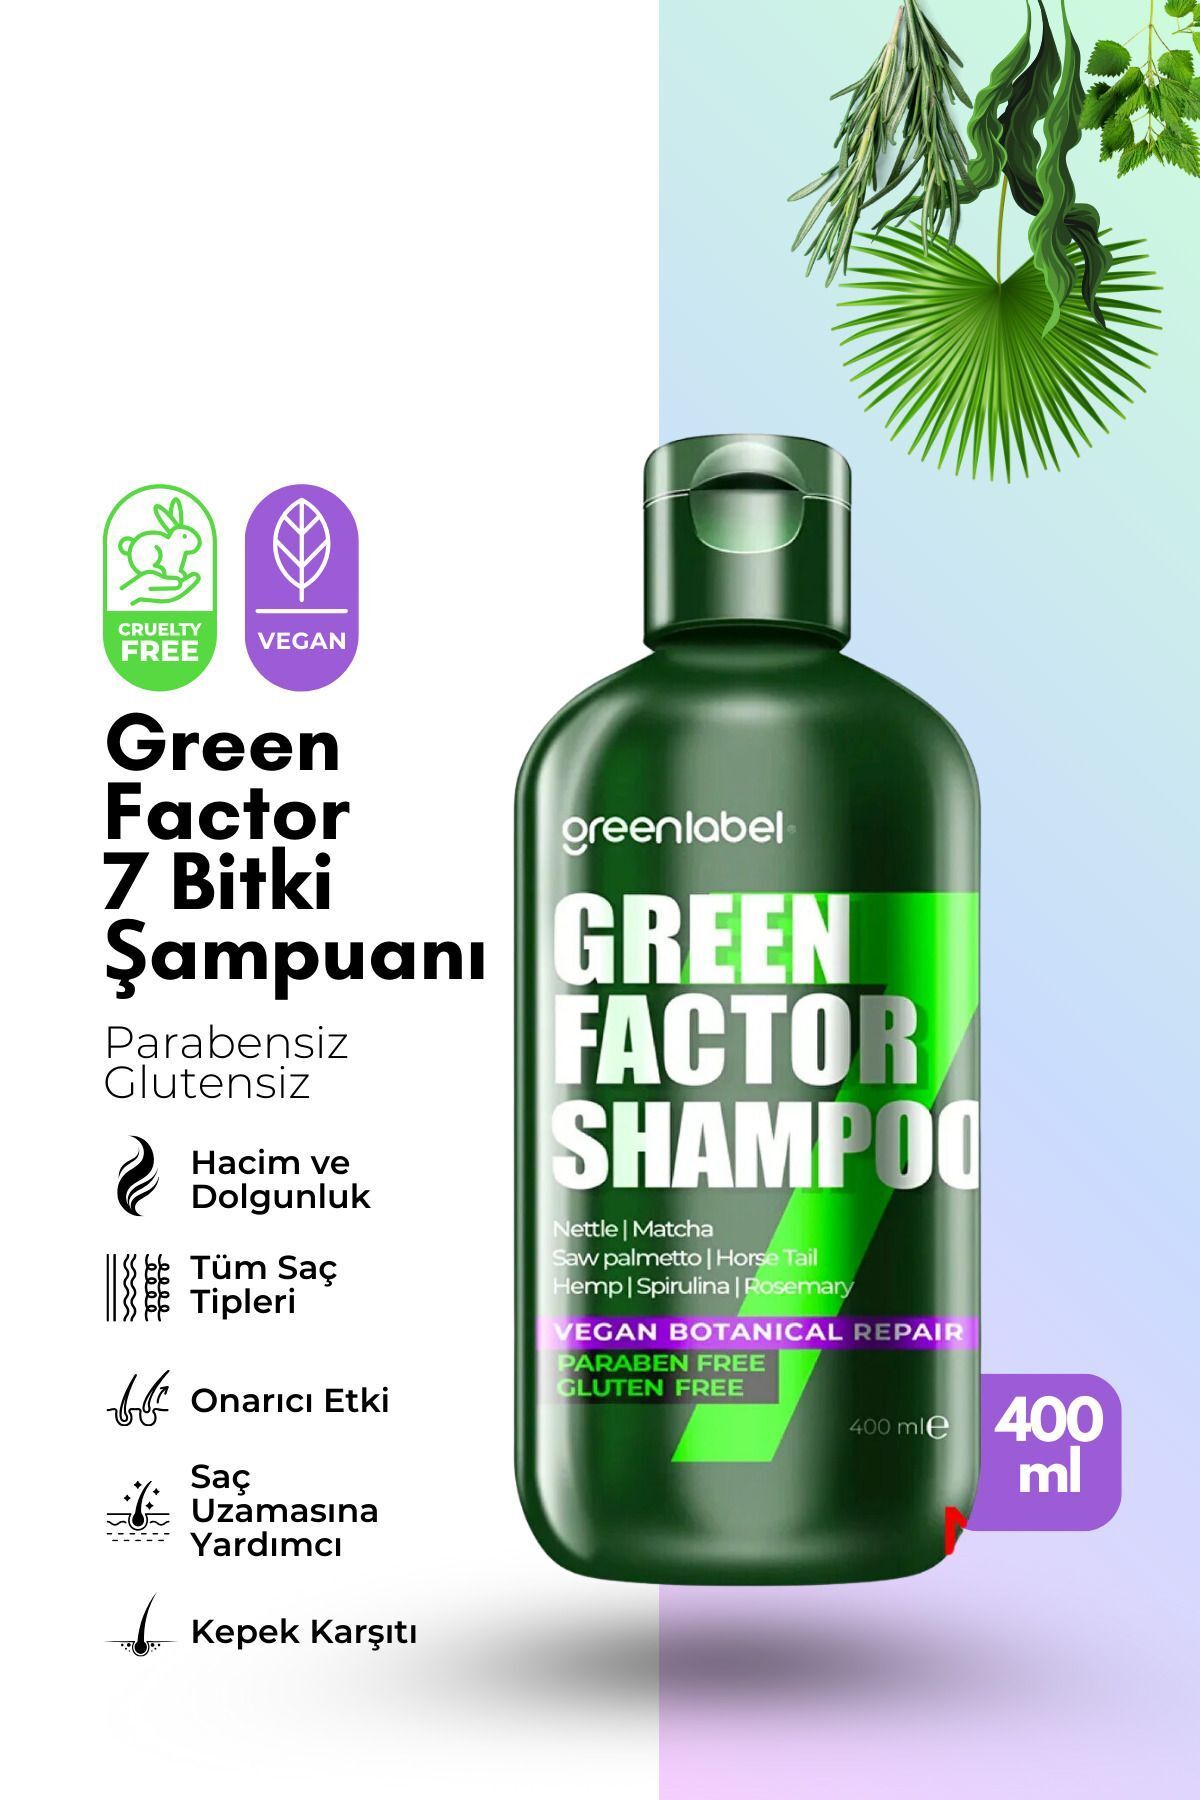 Green Label Green Factor 7 Bitkili Vegan Parabensiz Glutensiz Yoğun Bakım Ve Biberiye Suyu Içeren Şampuan